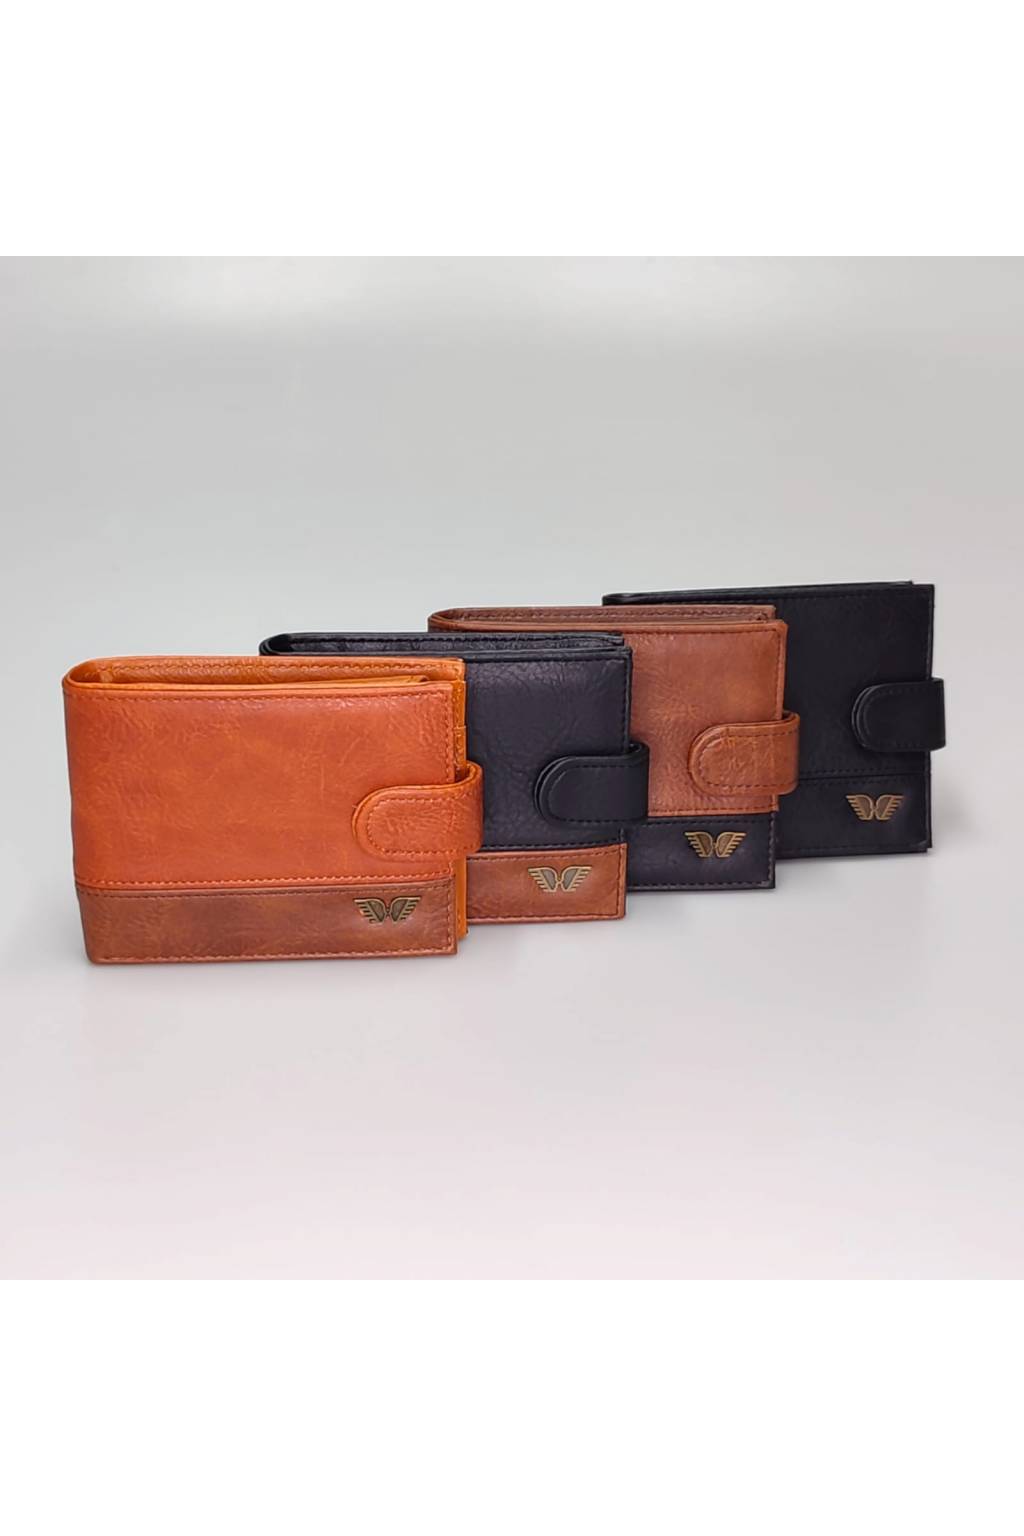 Pánska peňaženka eko koža B7065 1 www.kabelky vypredaj.eu (1)